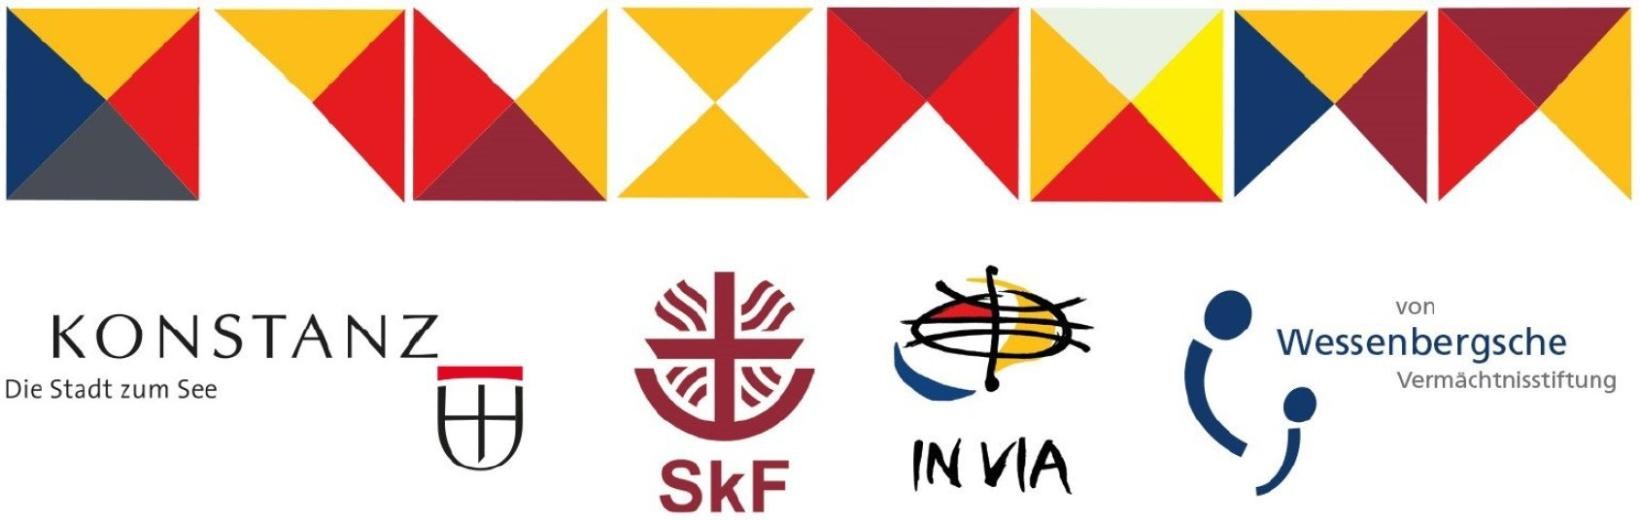 Kopfleist der Rahmenkonzeption, inklusive Logos der 4 Träger